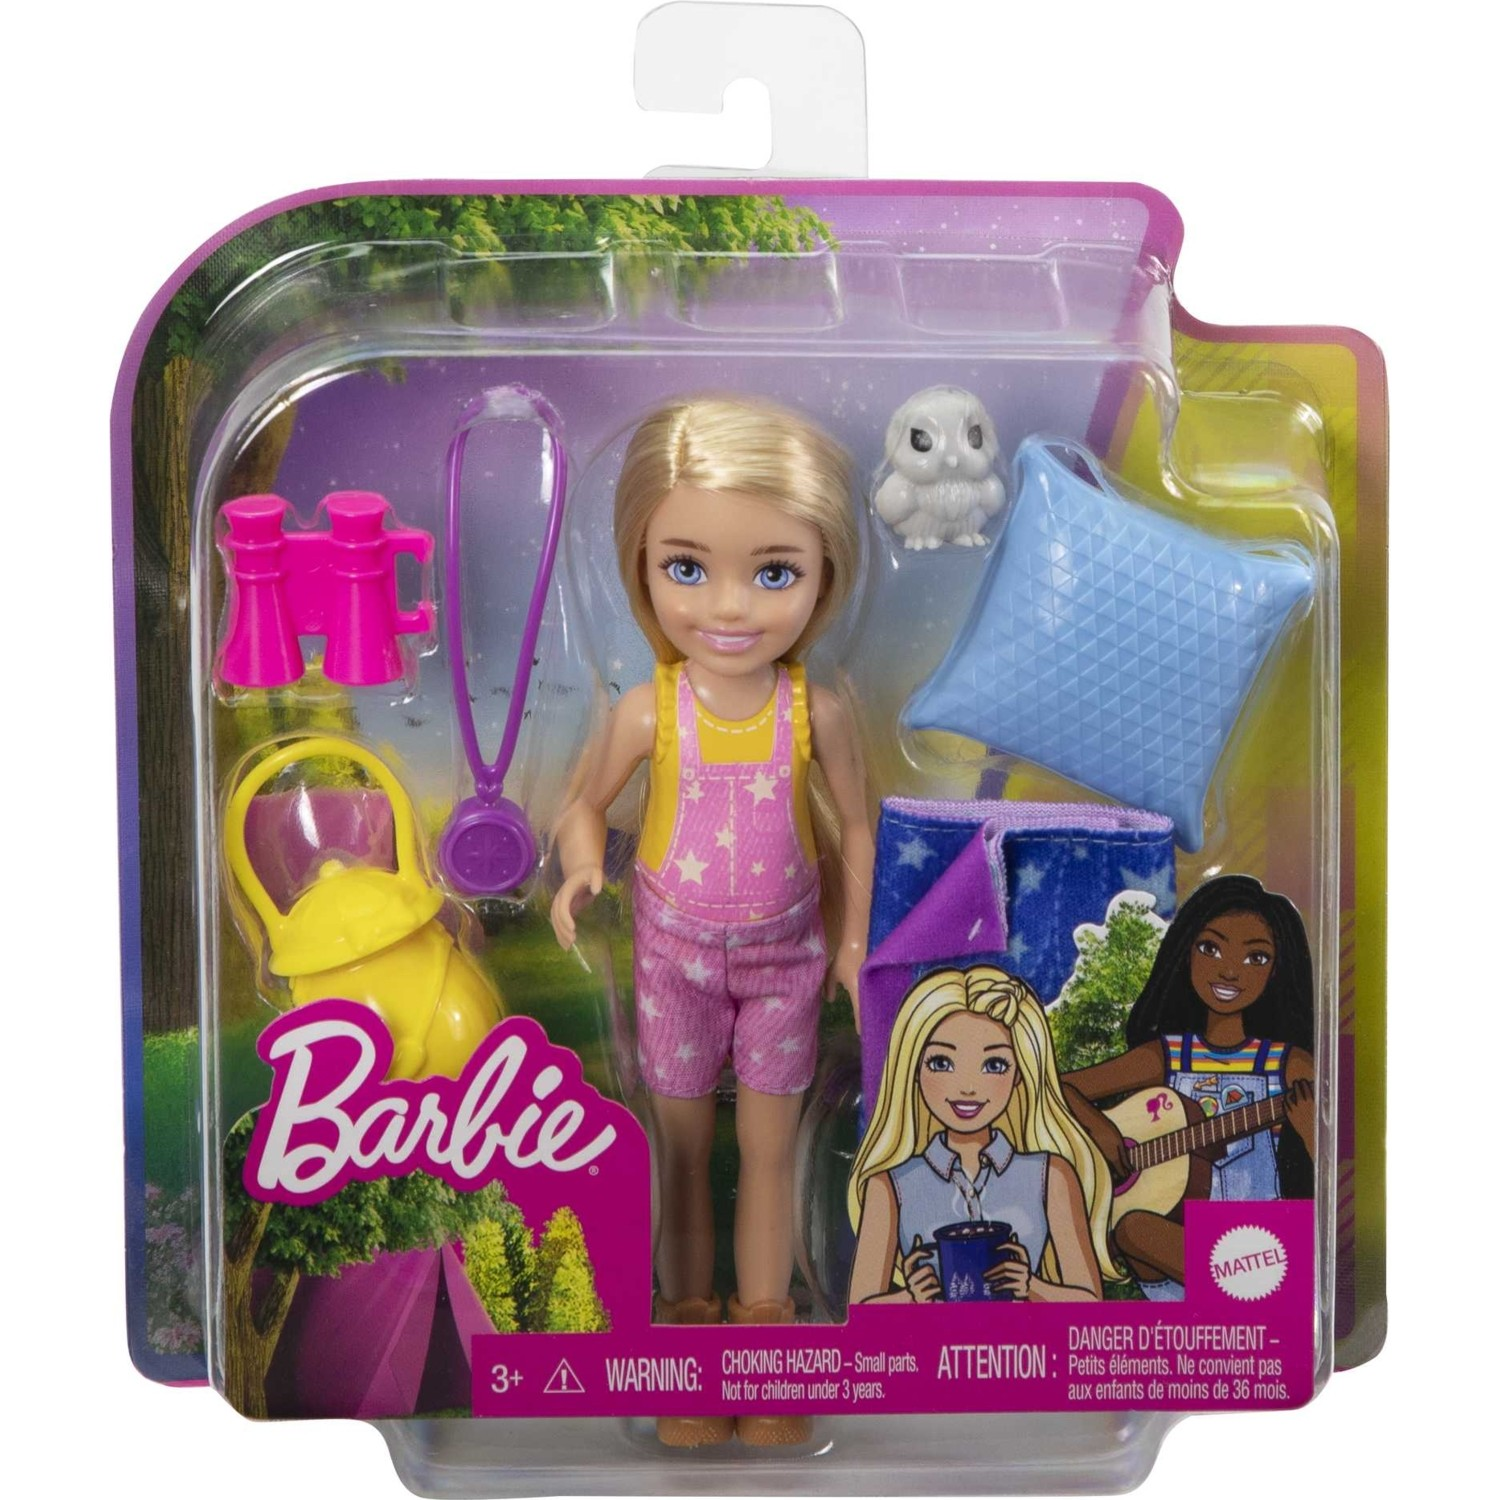 Кукла Barbie Color Reveal Челси в непрозрачной упаковке (Сюрприз) HDN77 HDN77 - фото 5